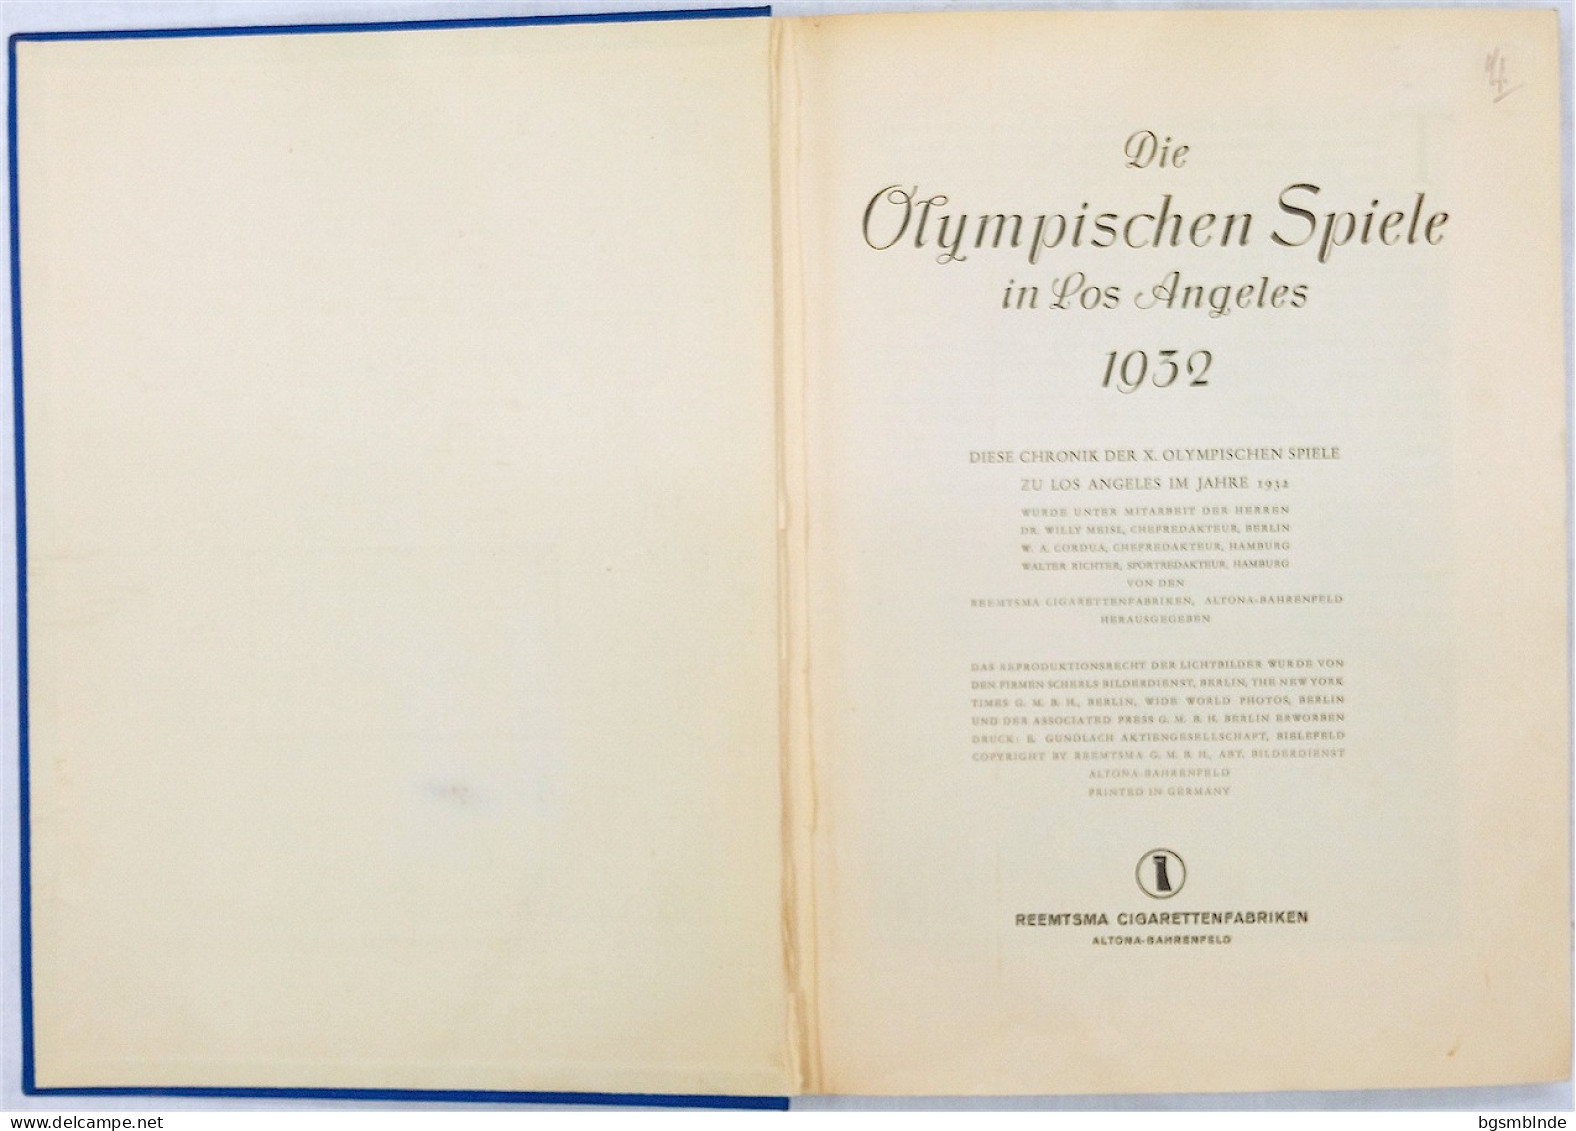 Die Olympischen Spiele 1932 In Los Angeles - Sammel-Bildband Komplett / 142 S. - 24,5x32x2,6cm - Sports